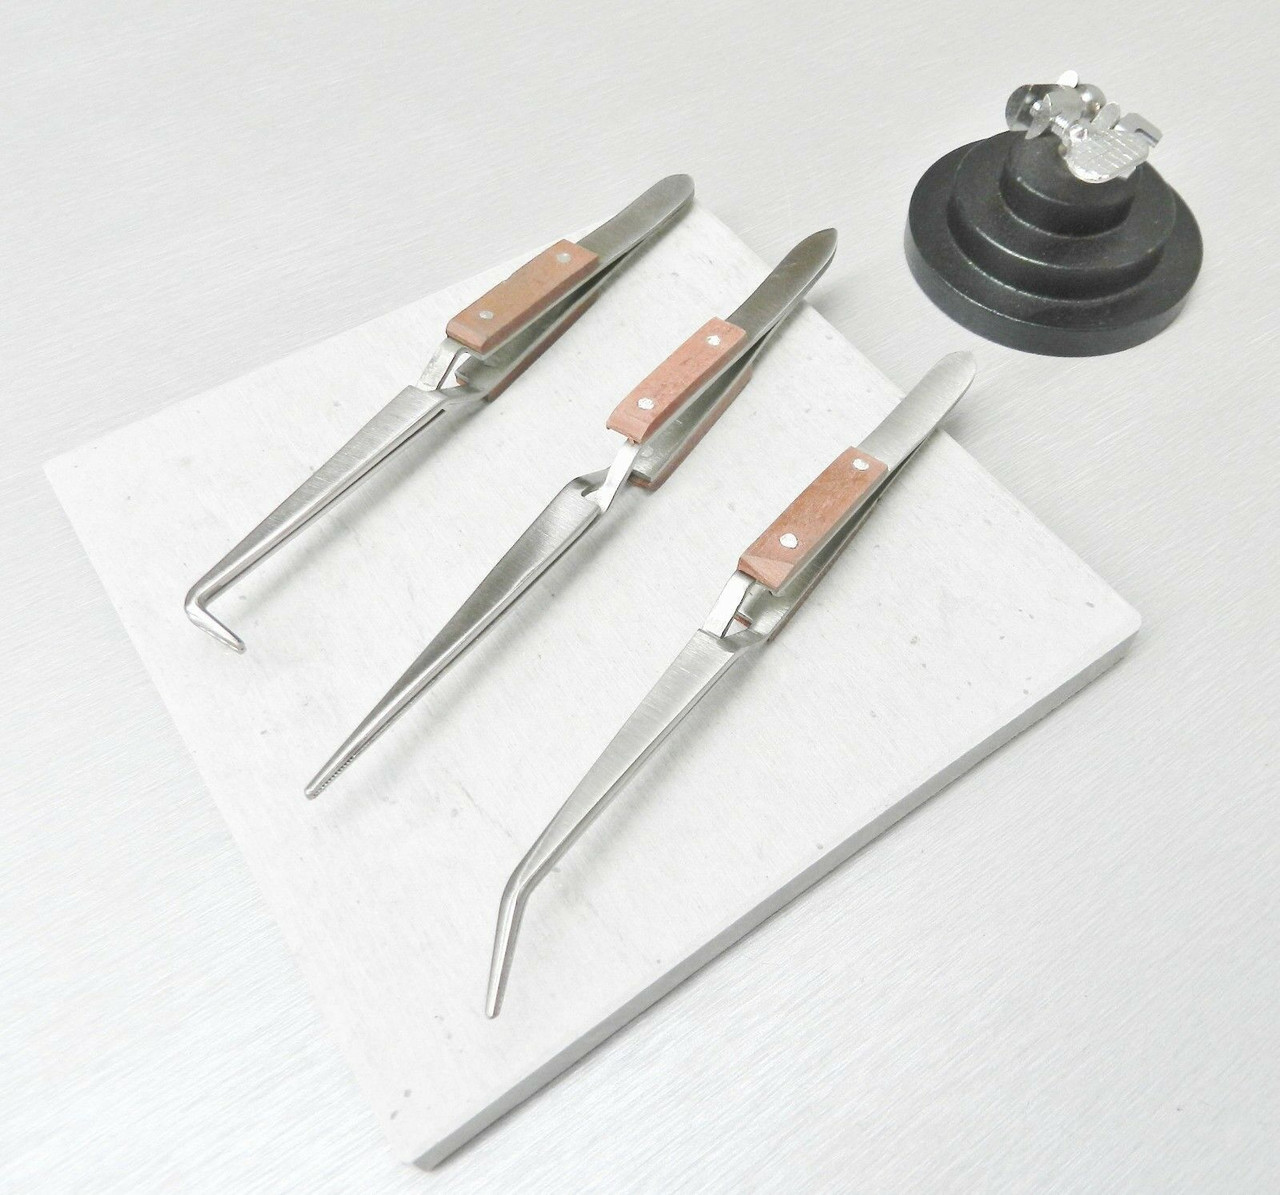 Jewelry Soldering Tools Solder Board Third Hand and Set of 3 Fiber Grip Tweezers